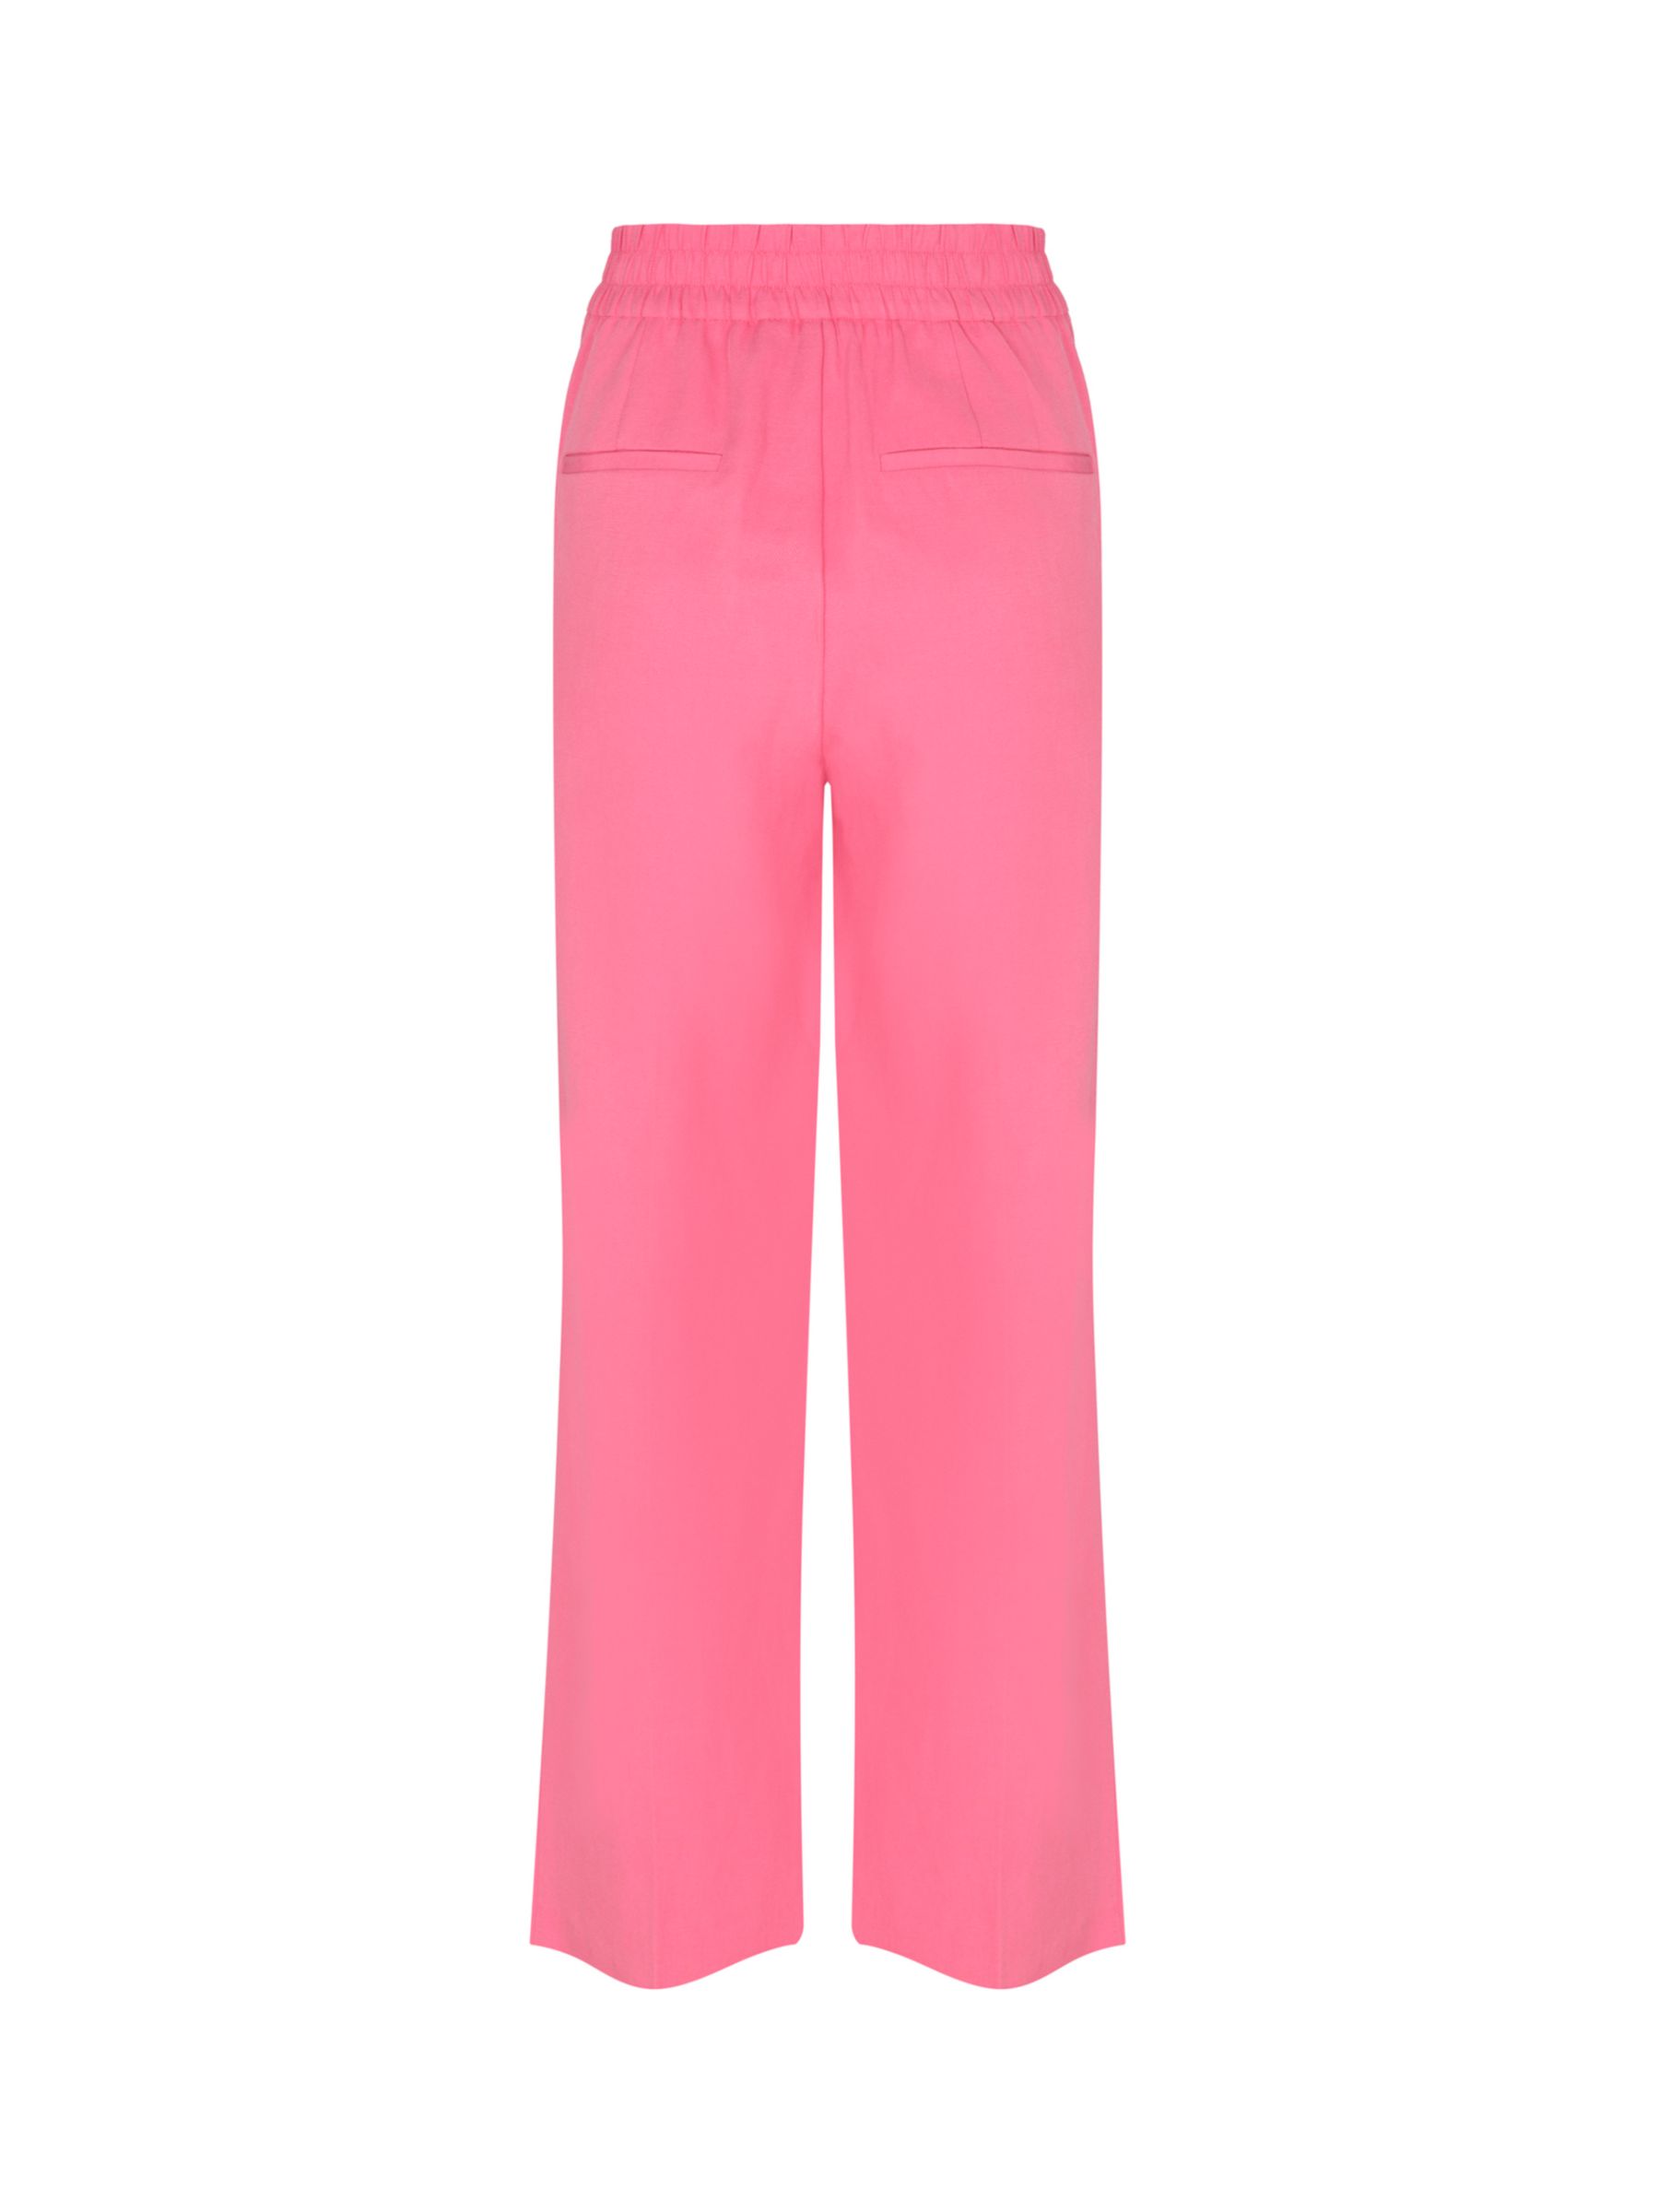 Mint Velvet Straight Leg Trousers, Pink, 6R